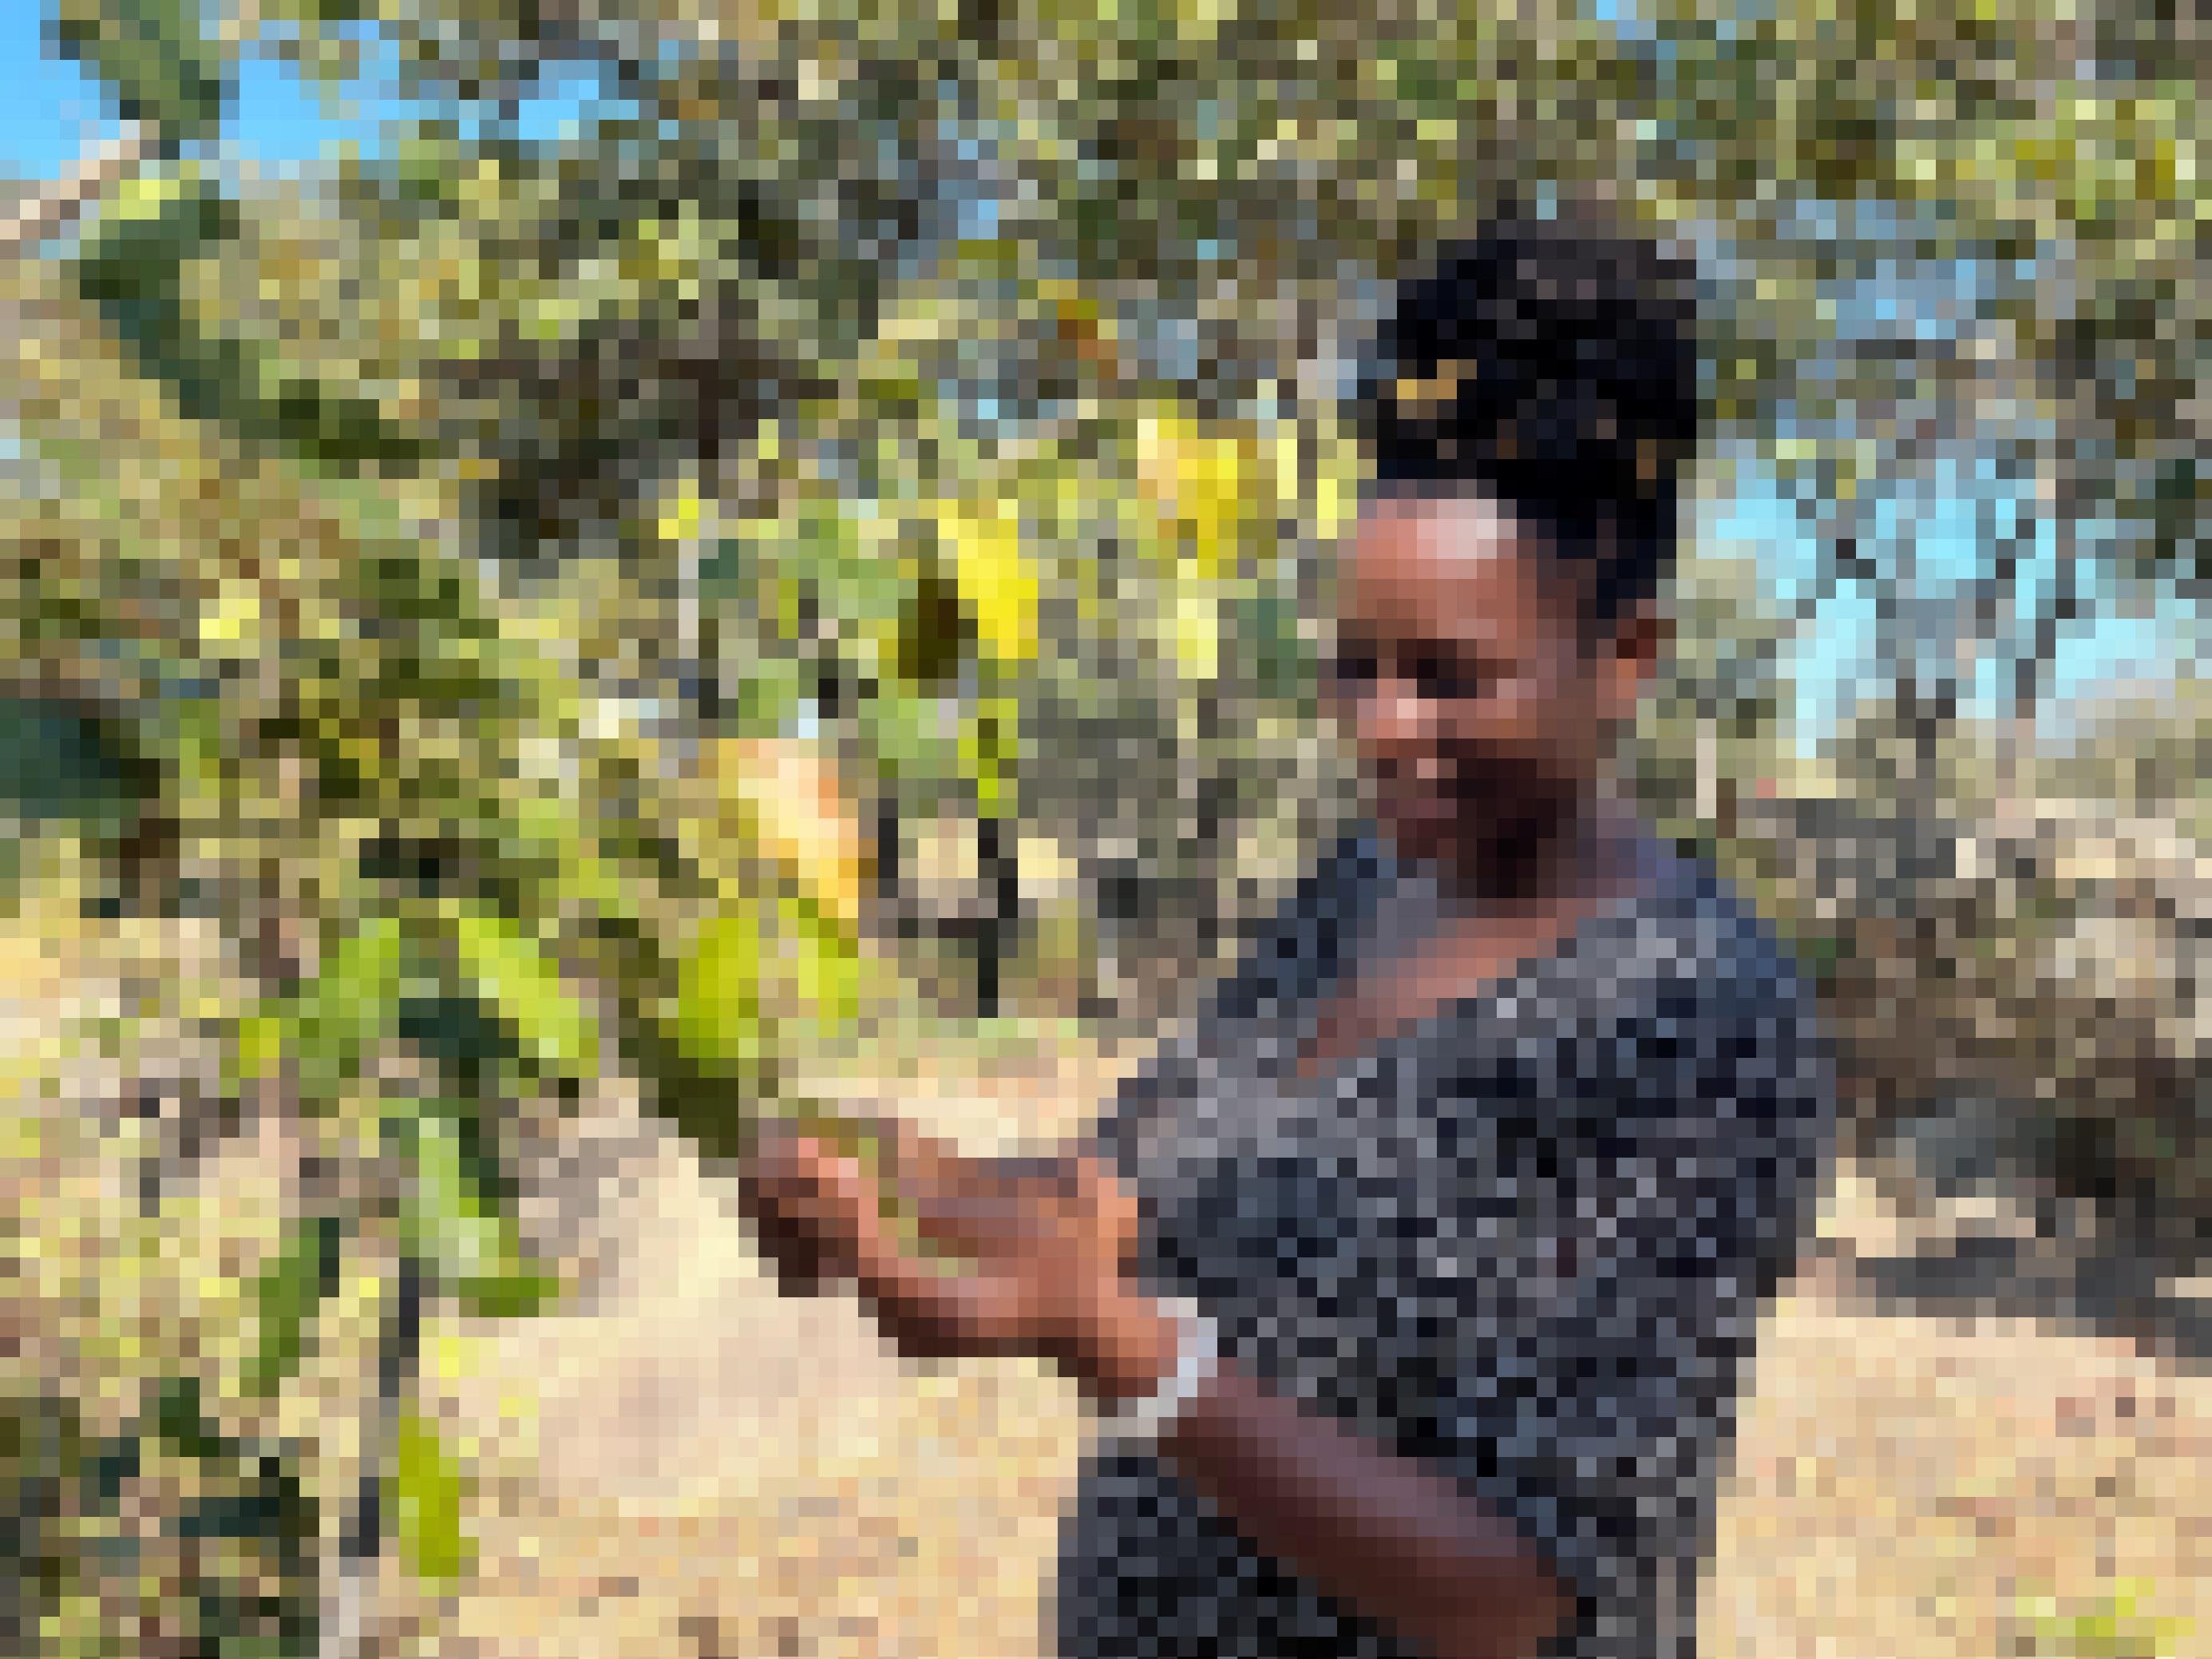 Eine eher junge Frau steht vor einem kleinen Baum, blickt auf ein Blatt (oder Samen?) in ihrer Hand und lächelt breit.